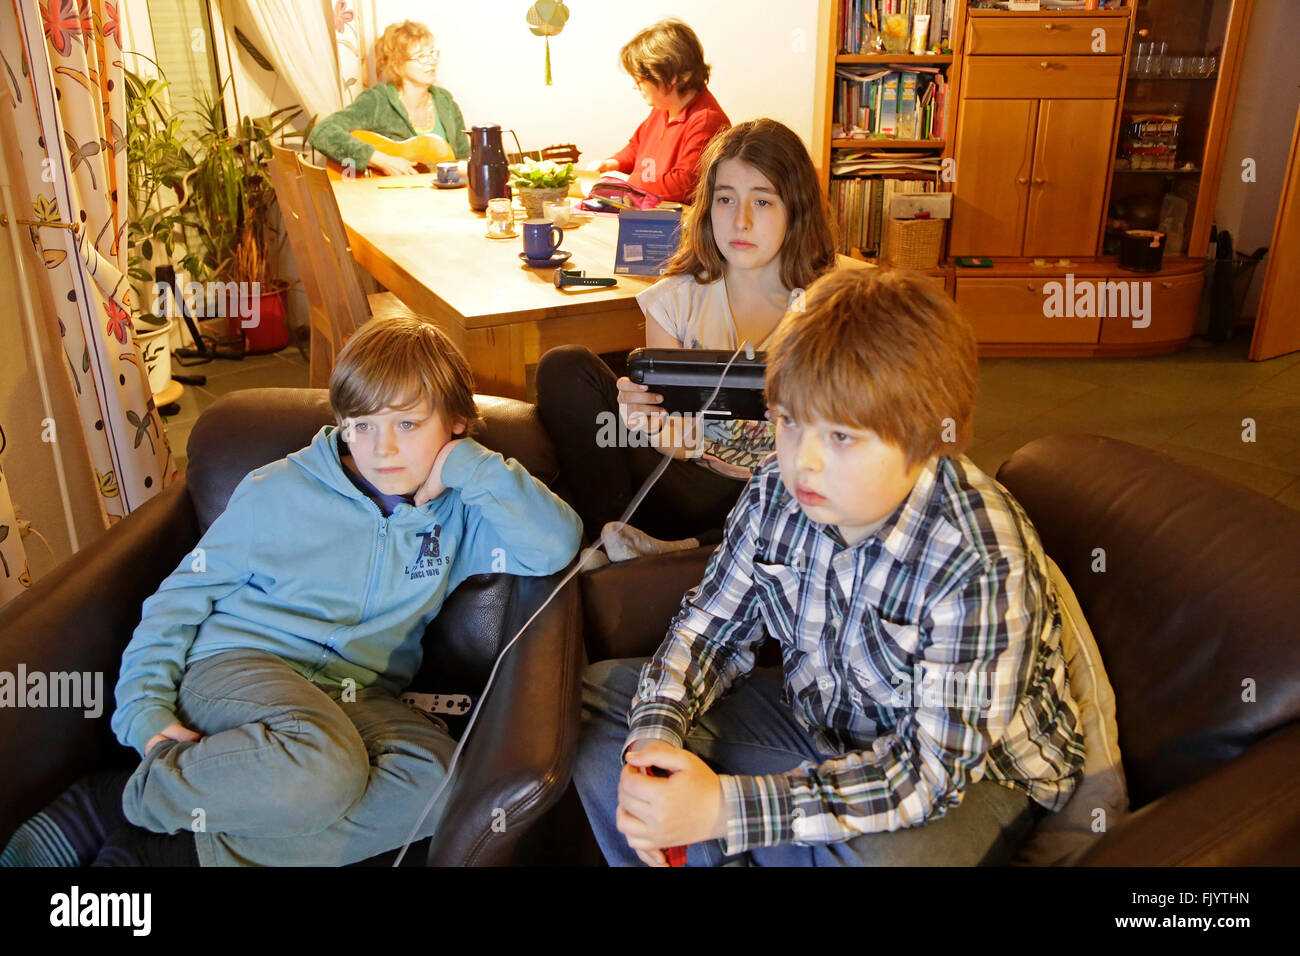 Kinder spielen Wii U, während ihre Mütter sind einen chat Stockfoto